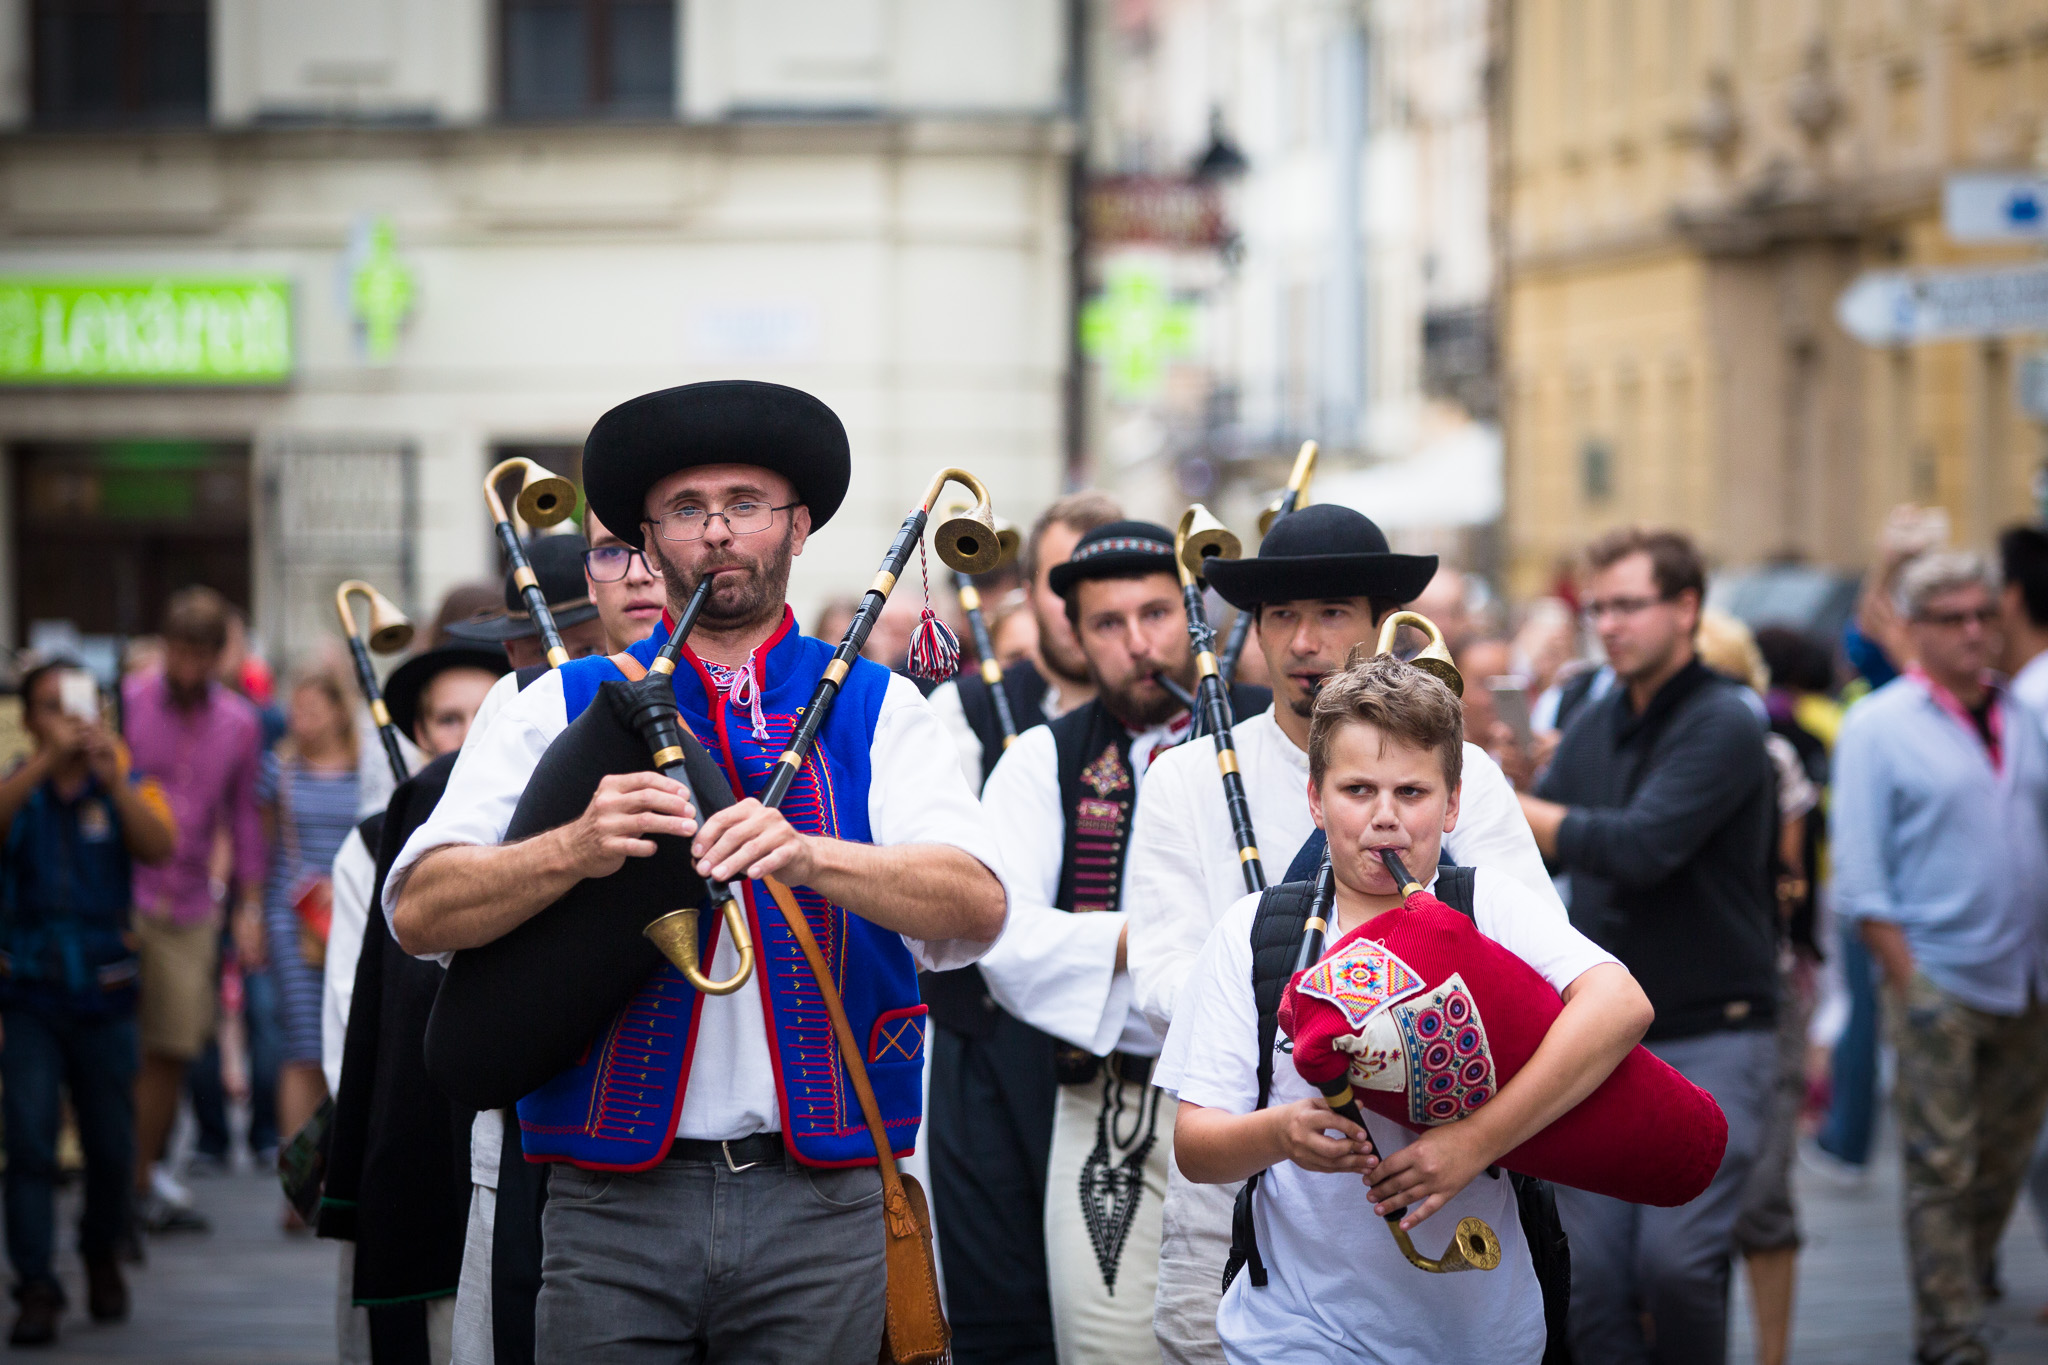 جشنواره ی موسیقی براتیسلاوا 